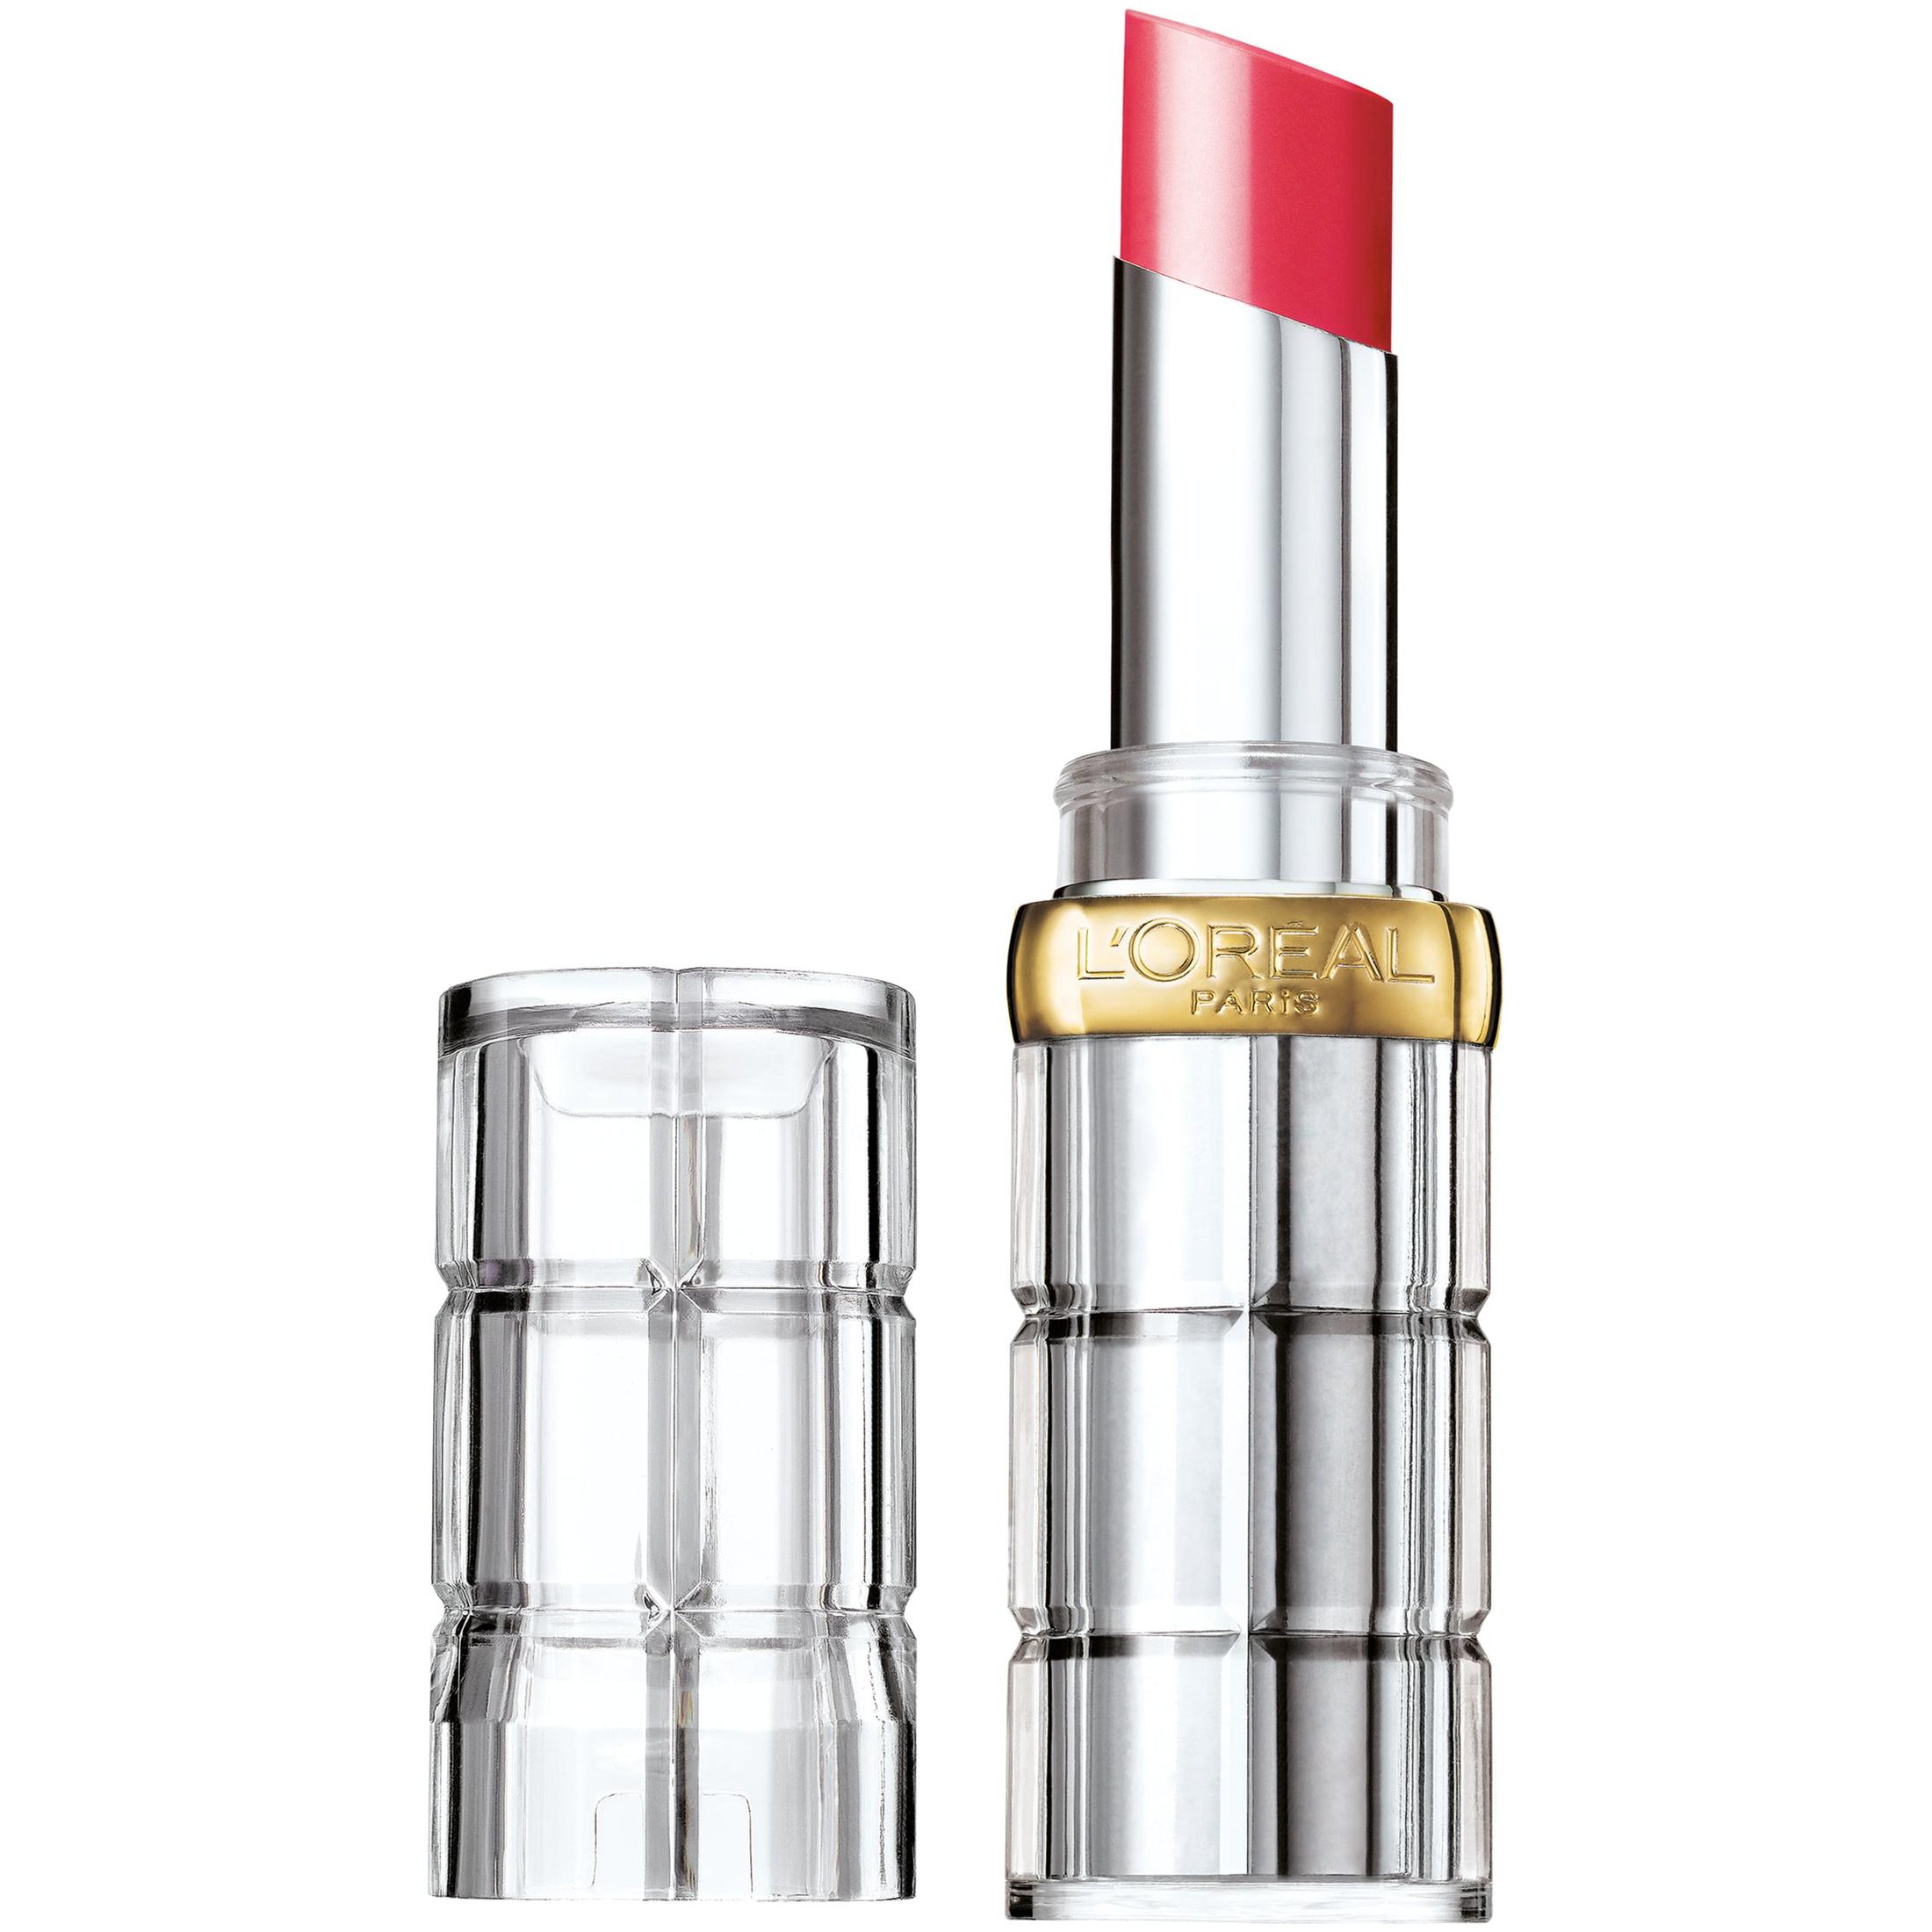 L'Oreal Paris Colour Riche Shine Glossy Ultra Rich Lipstick, Lacquered Strawberry - image 1 of 5